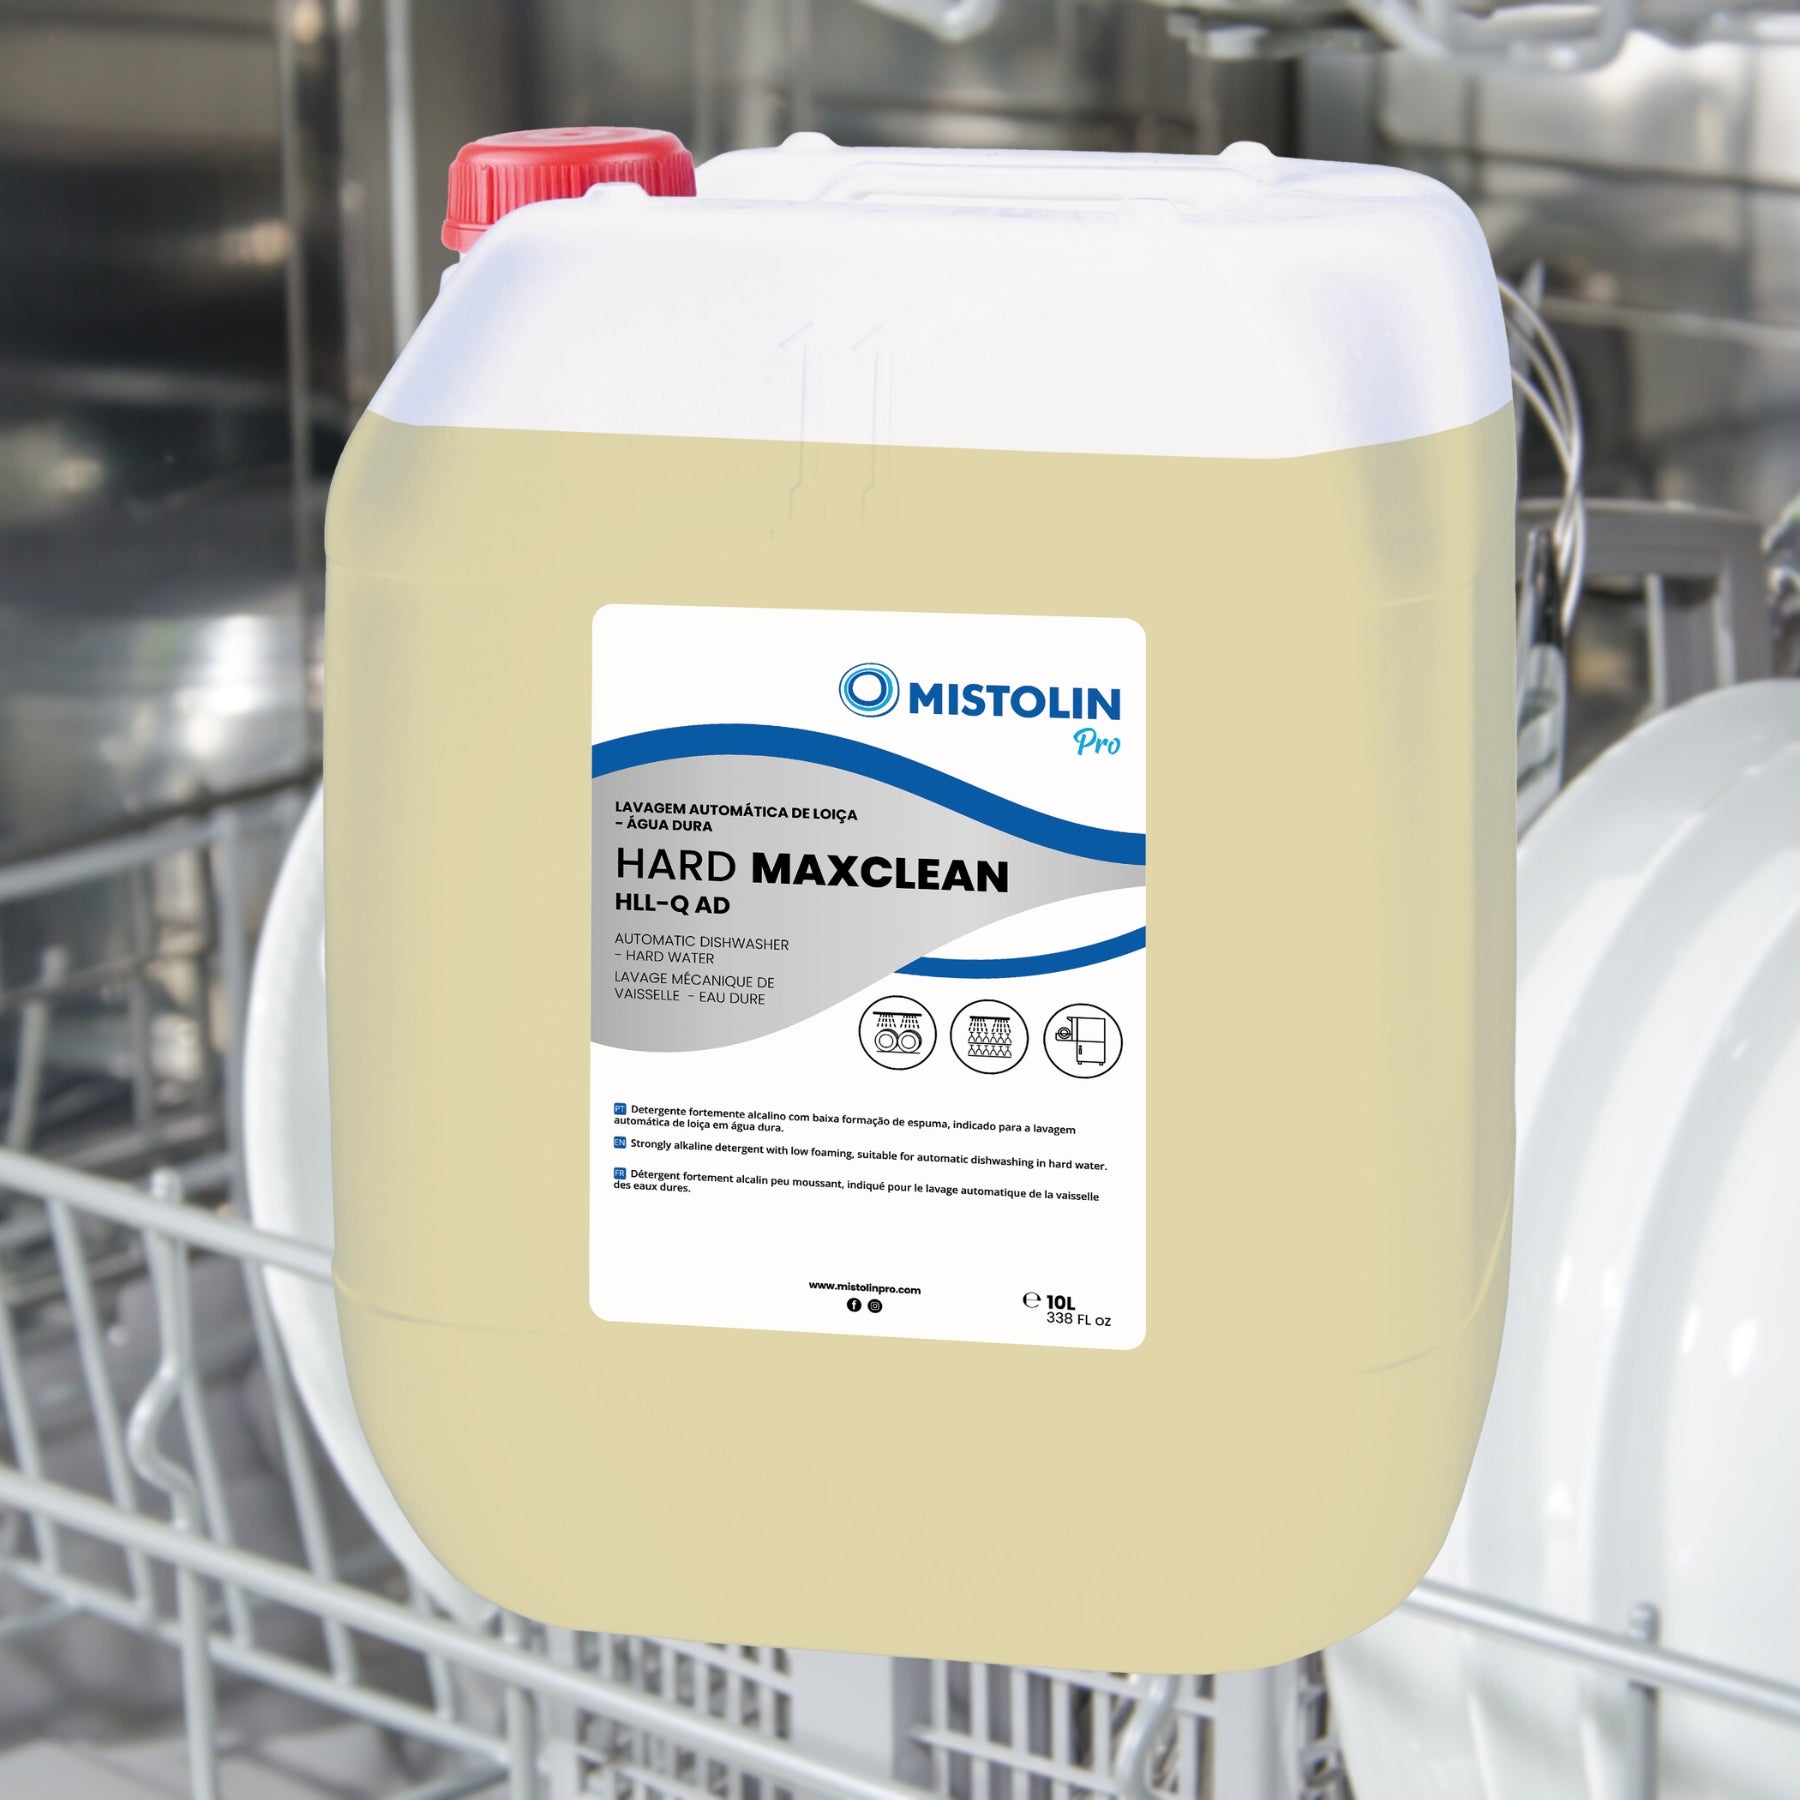 HARD MAXCLEAN HLL-Q AD DET.LAV.MECANICA LOIÇA 10LT, é um detergente fortemente alcalino com baixa formação de espuma, indicado para a lavagem automática de louça em água dura.